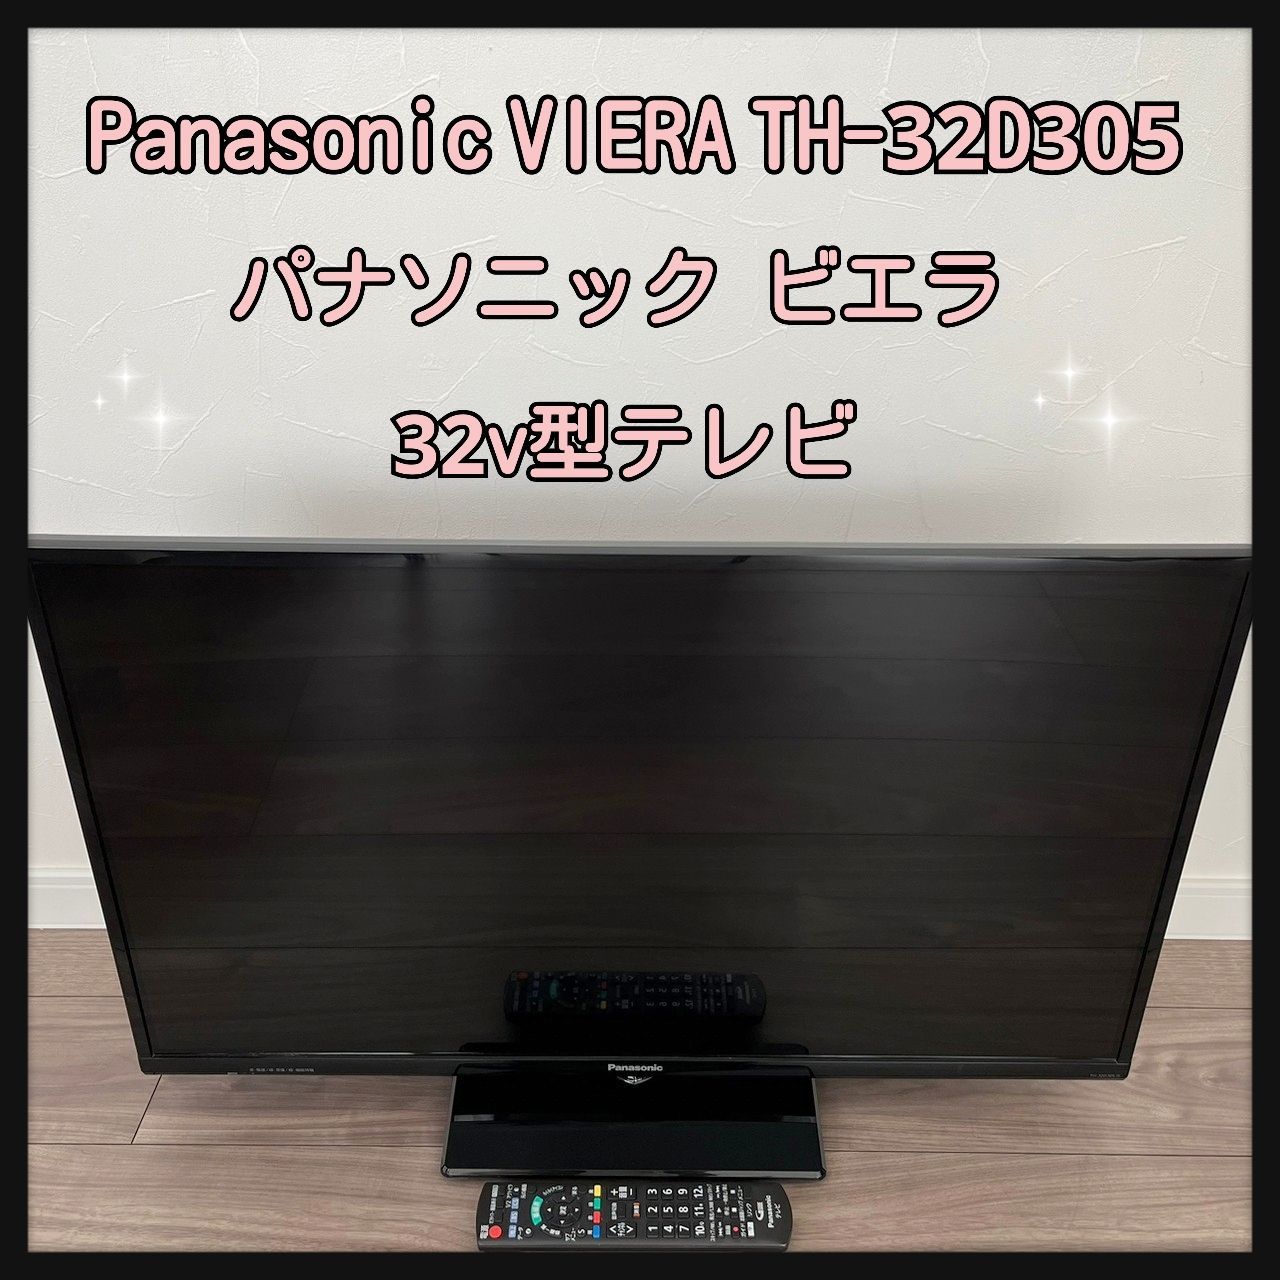 Panasonic VIERA TH-32D305 パナソニック ビエラ 32v型テレビ